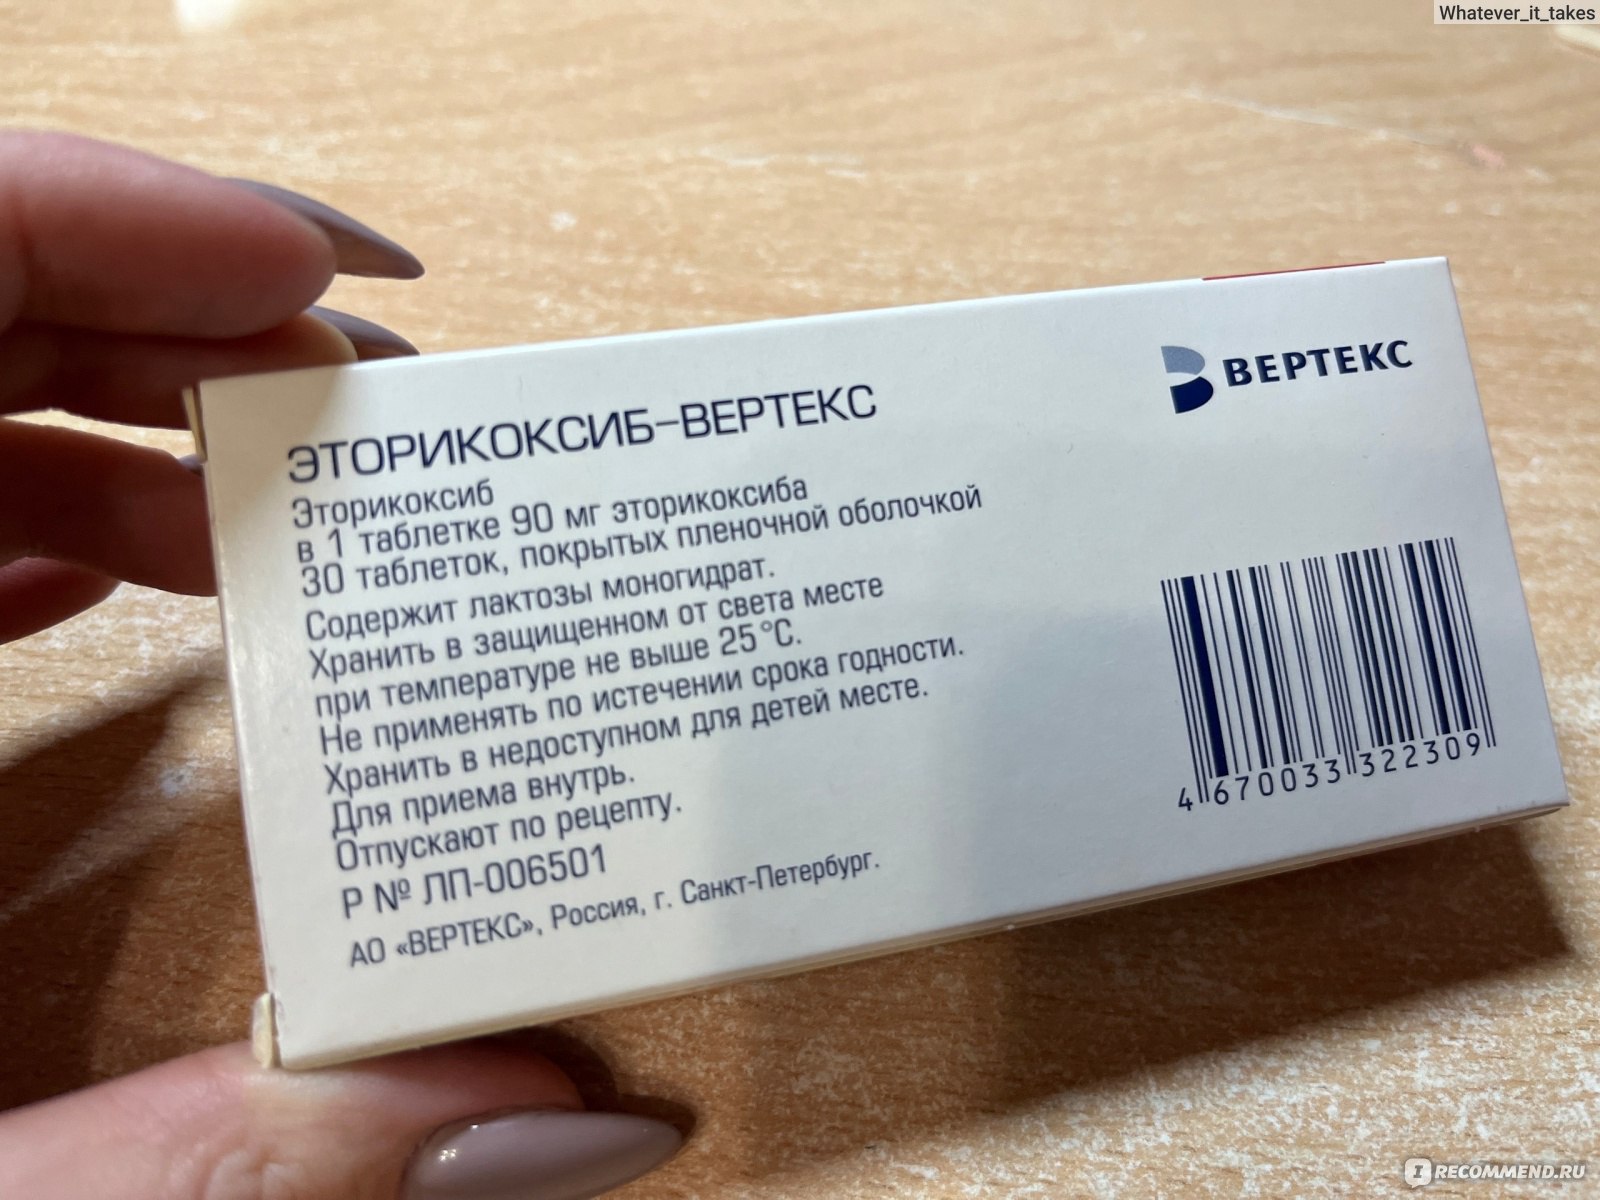 Нестероидный противовоспалительный препарат Вертекс Эторикоксиб .